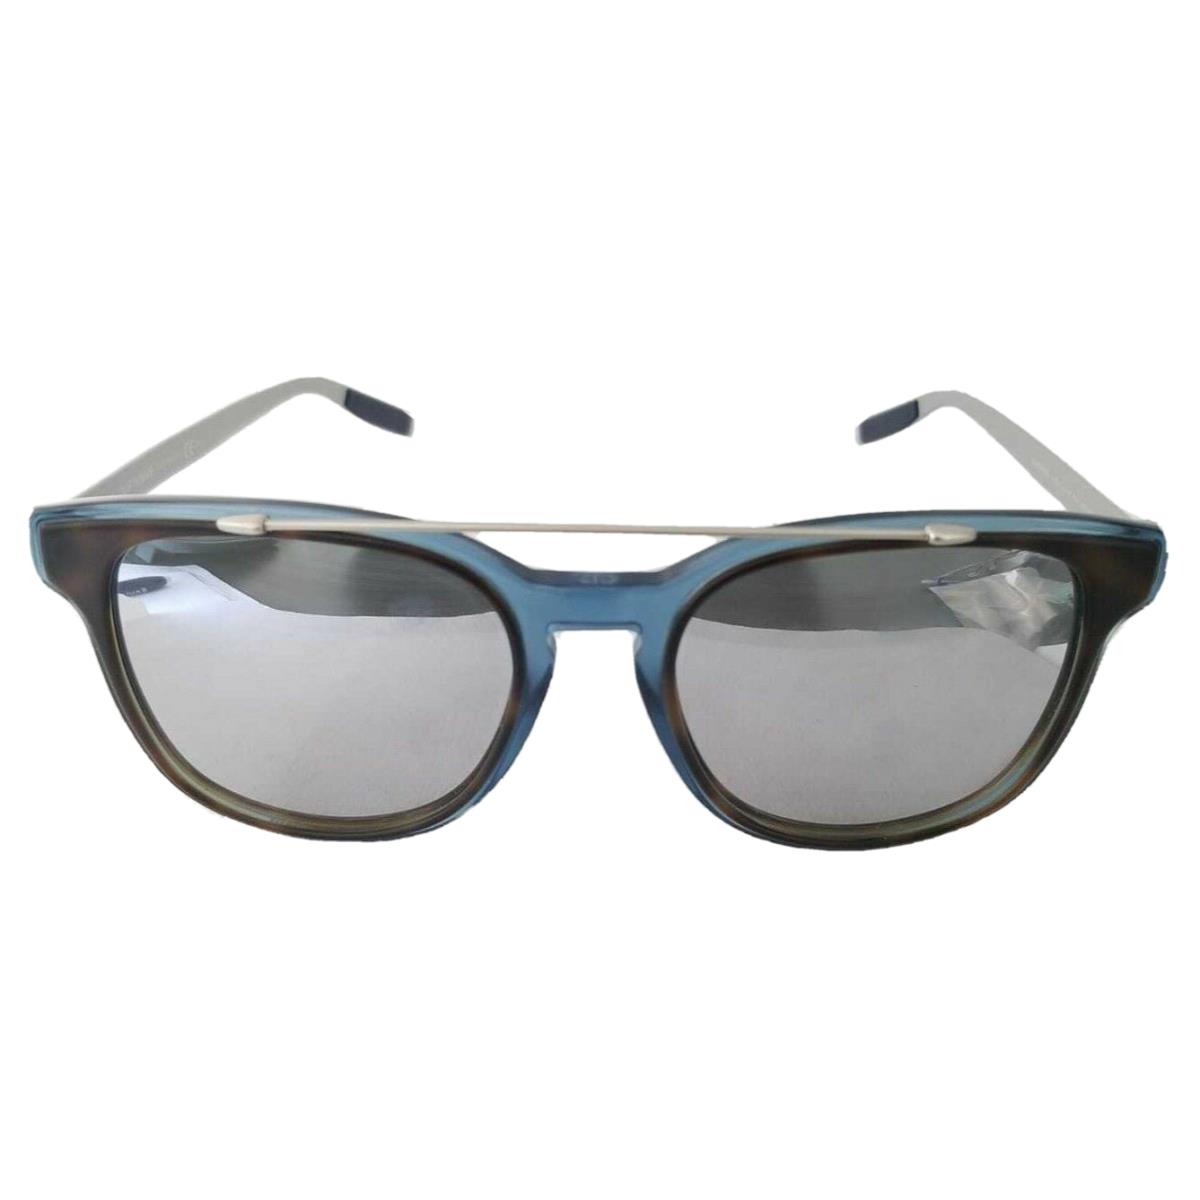 Christian Dior Sunglasses Double Bridge Homme Blacktie211s Vvsdc 52-19-150